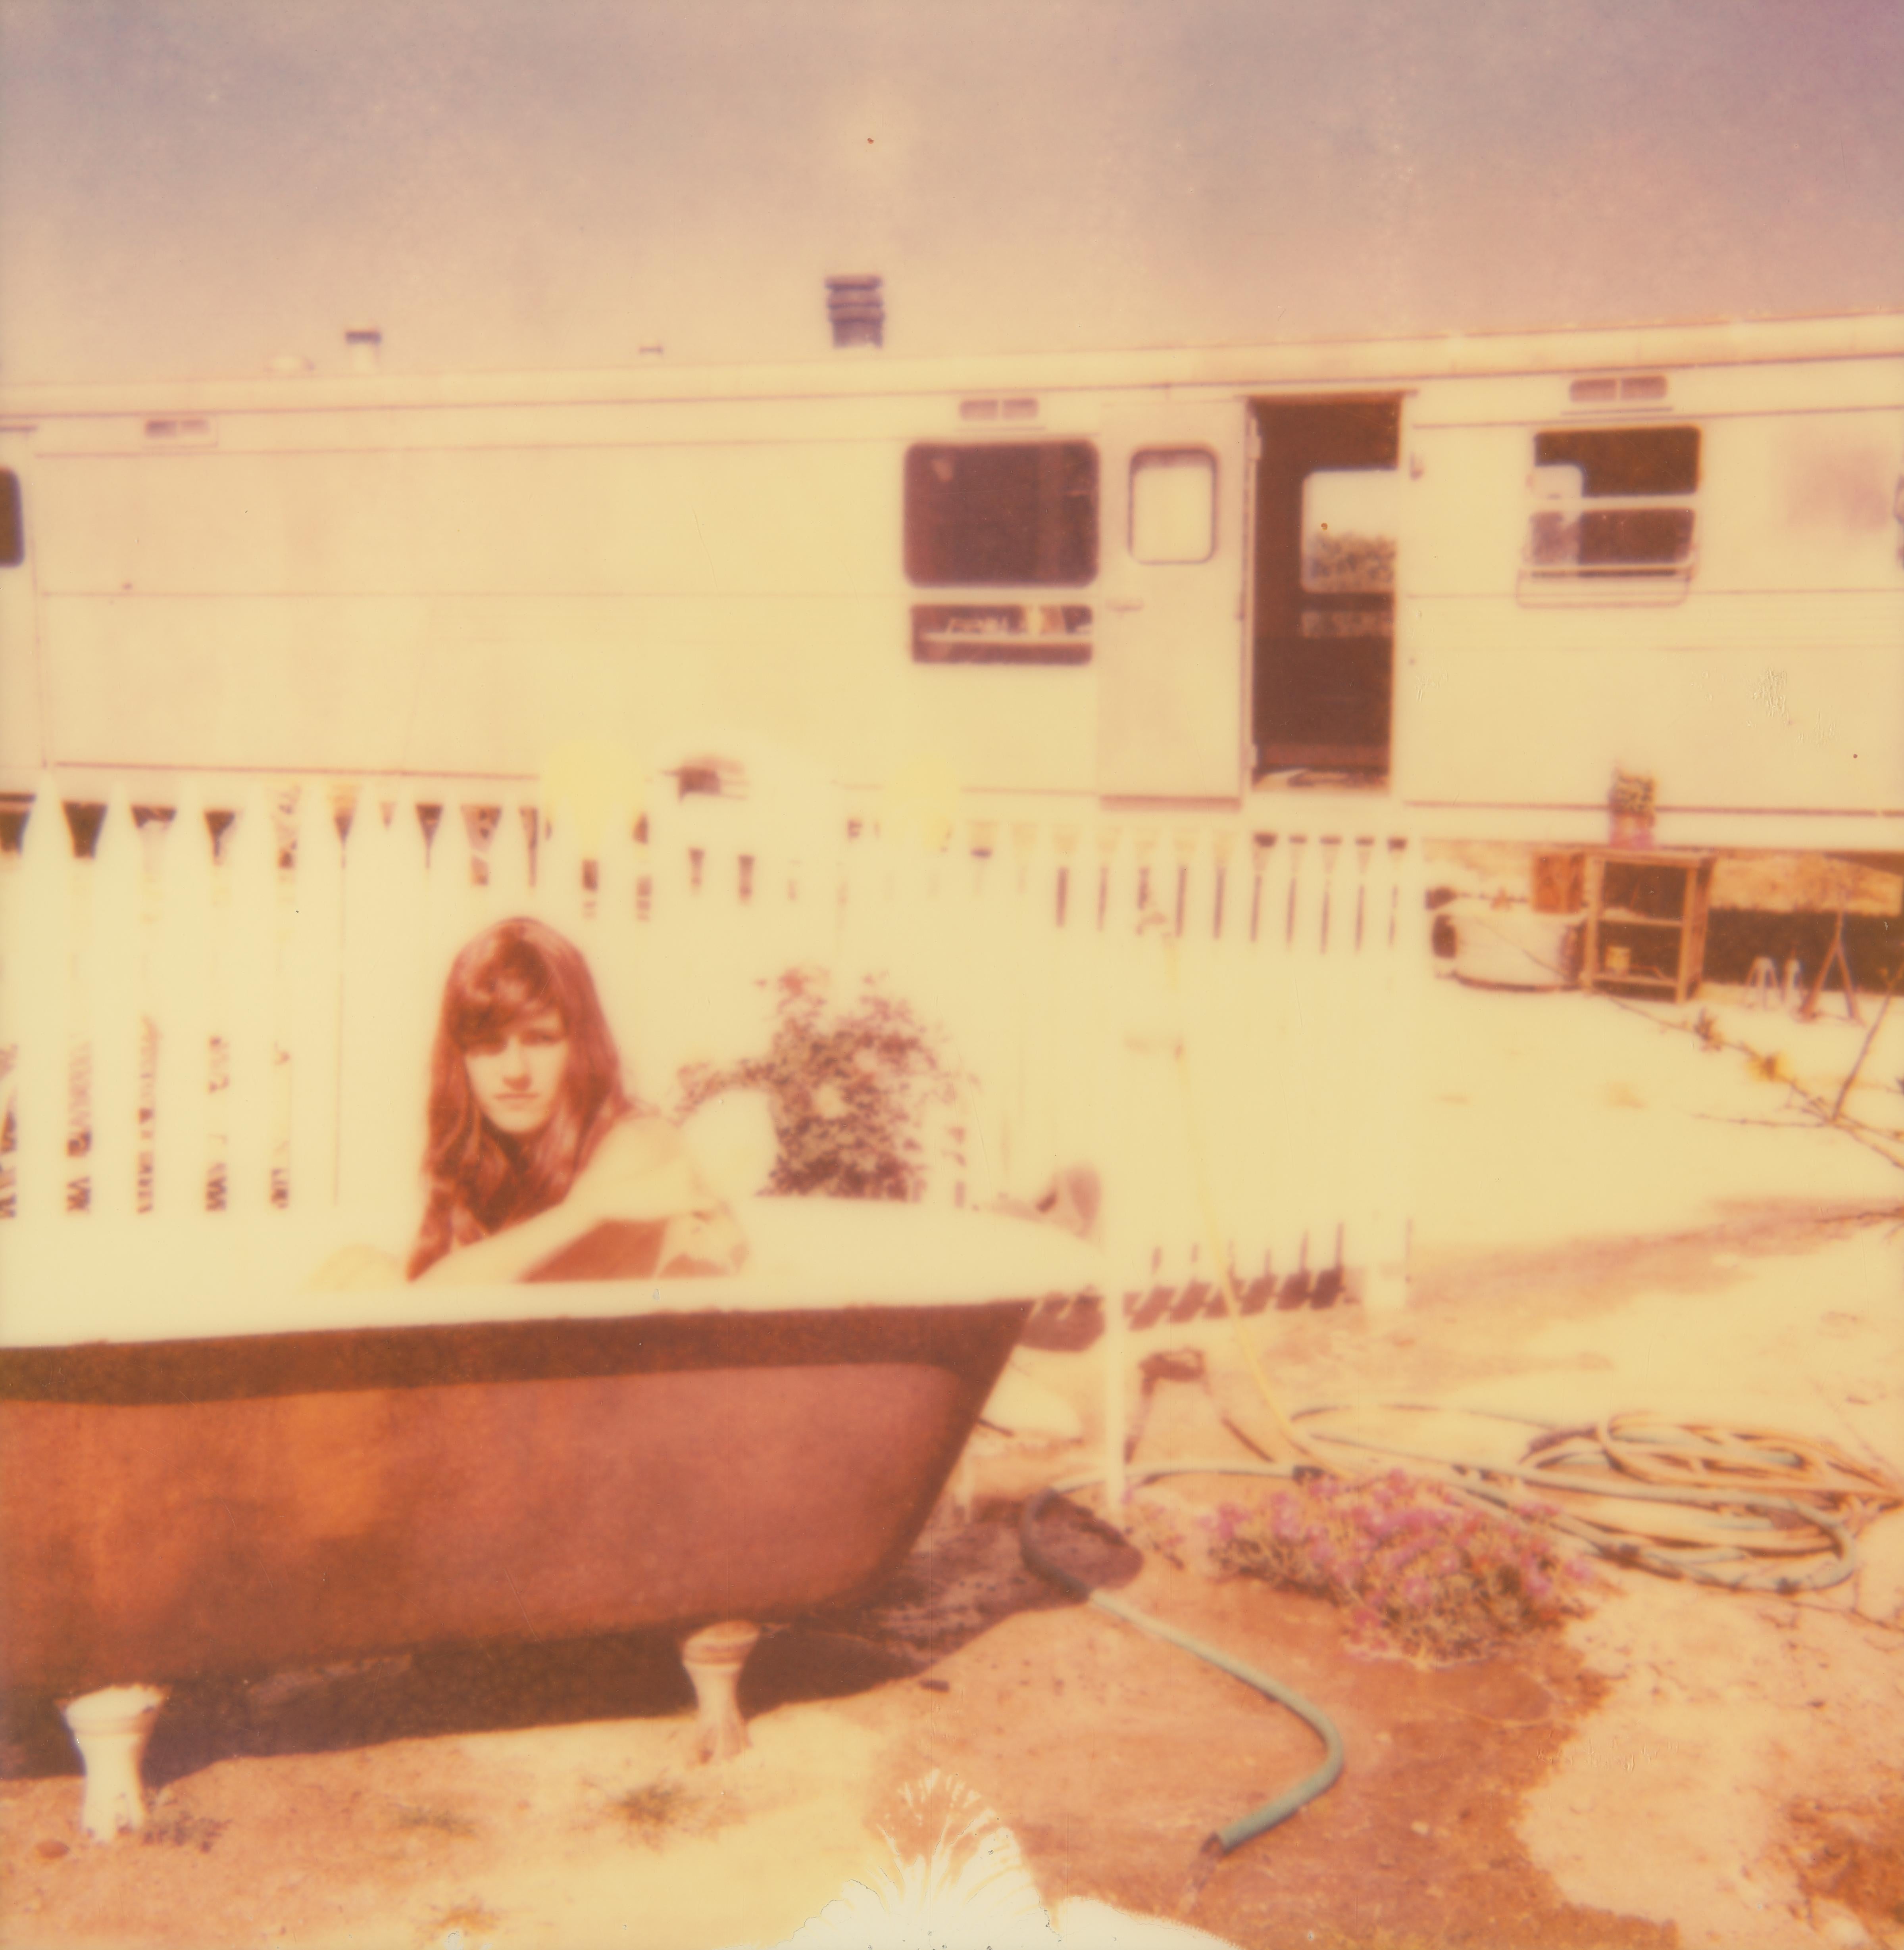 The Girl III (The Girl behind the White Picket Fence (La fille derrière la clôture de pichet blanc) - Contemporain, Polaroid